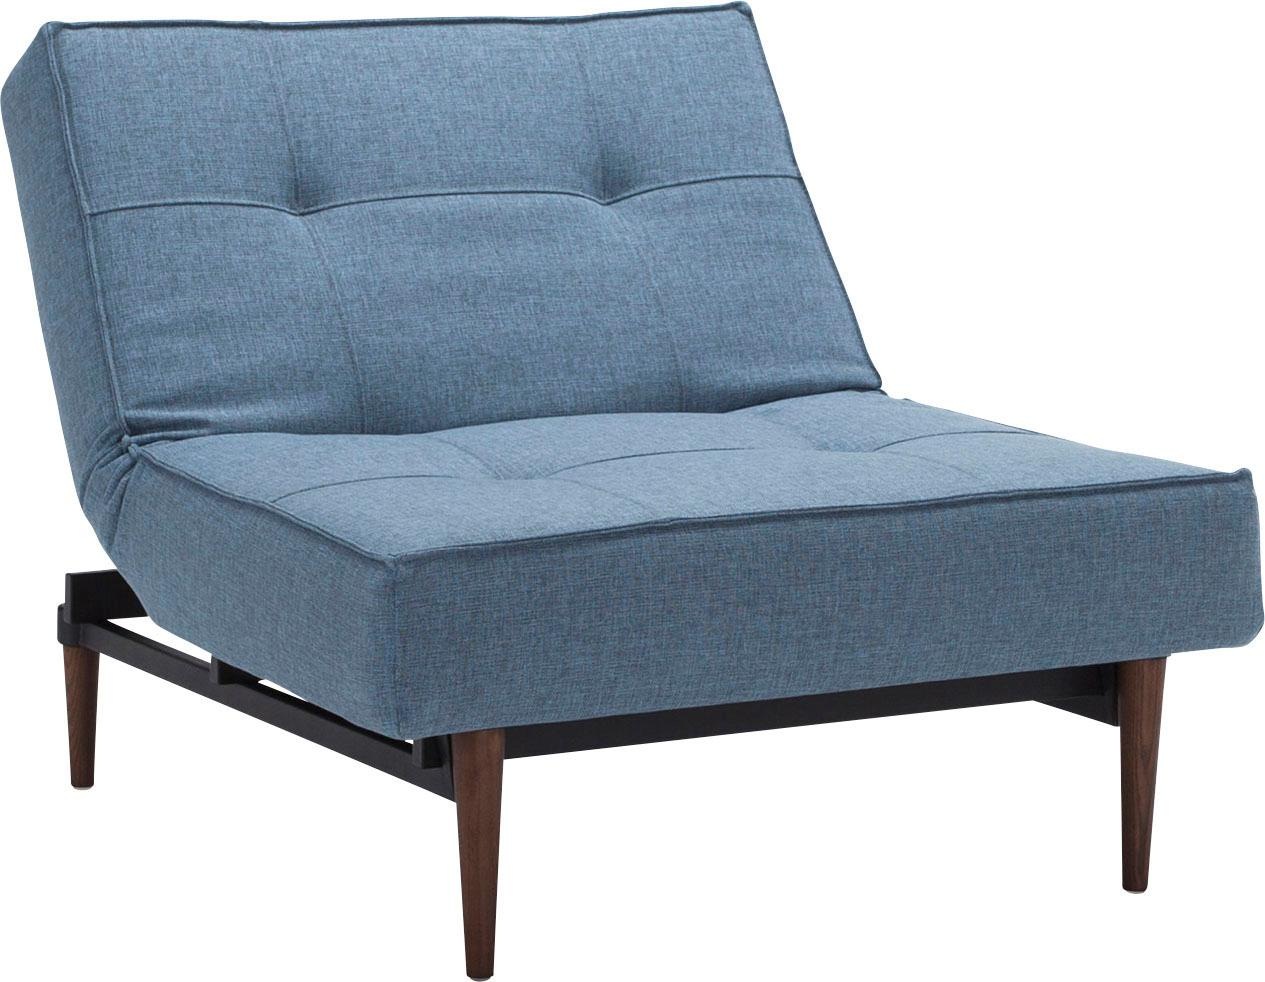 Design ™ in kaufen Styletto Sessel LIVING Raten INNOVATION dunklen mit »Splitback«, Beinen, auf skandinavischen